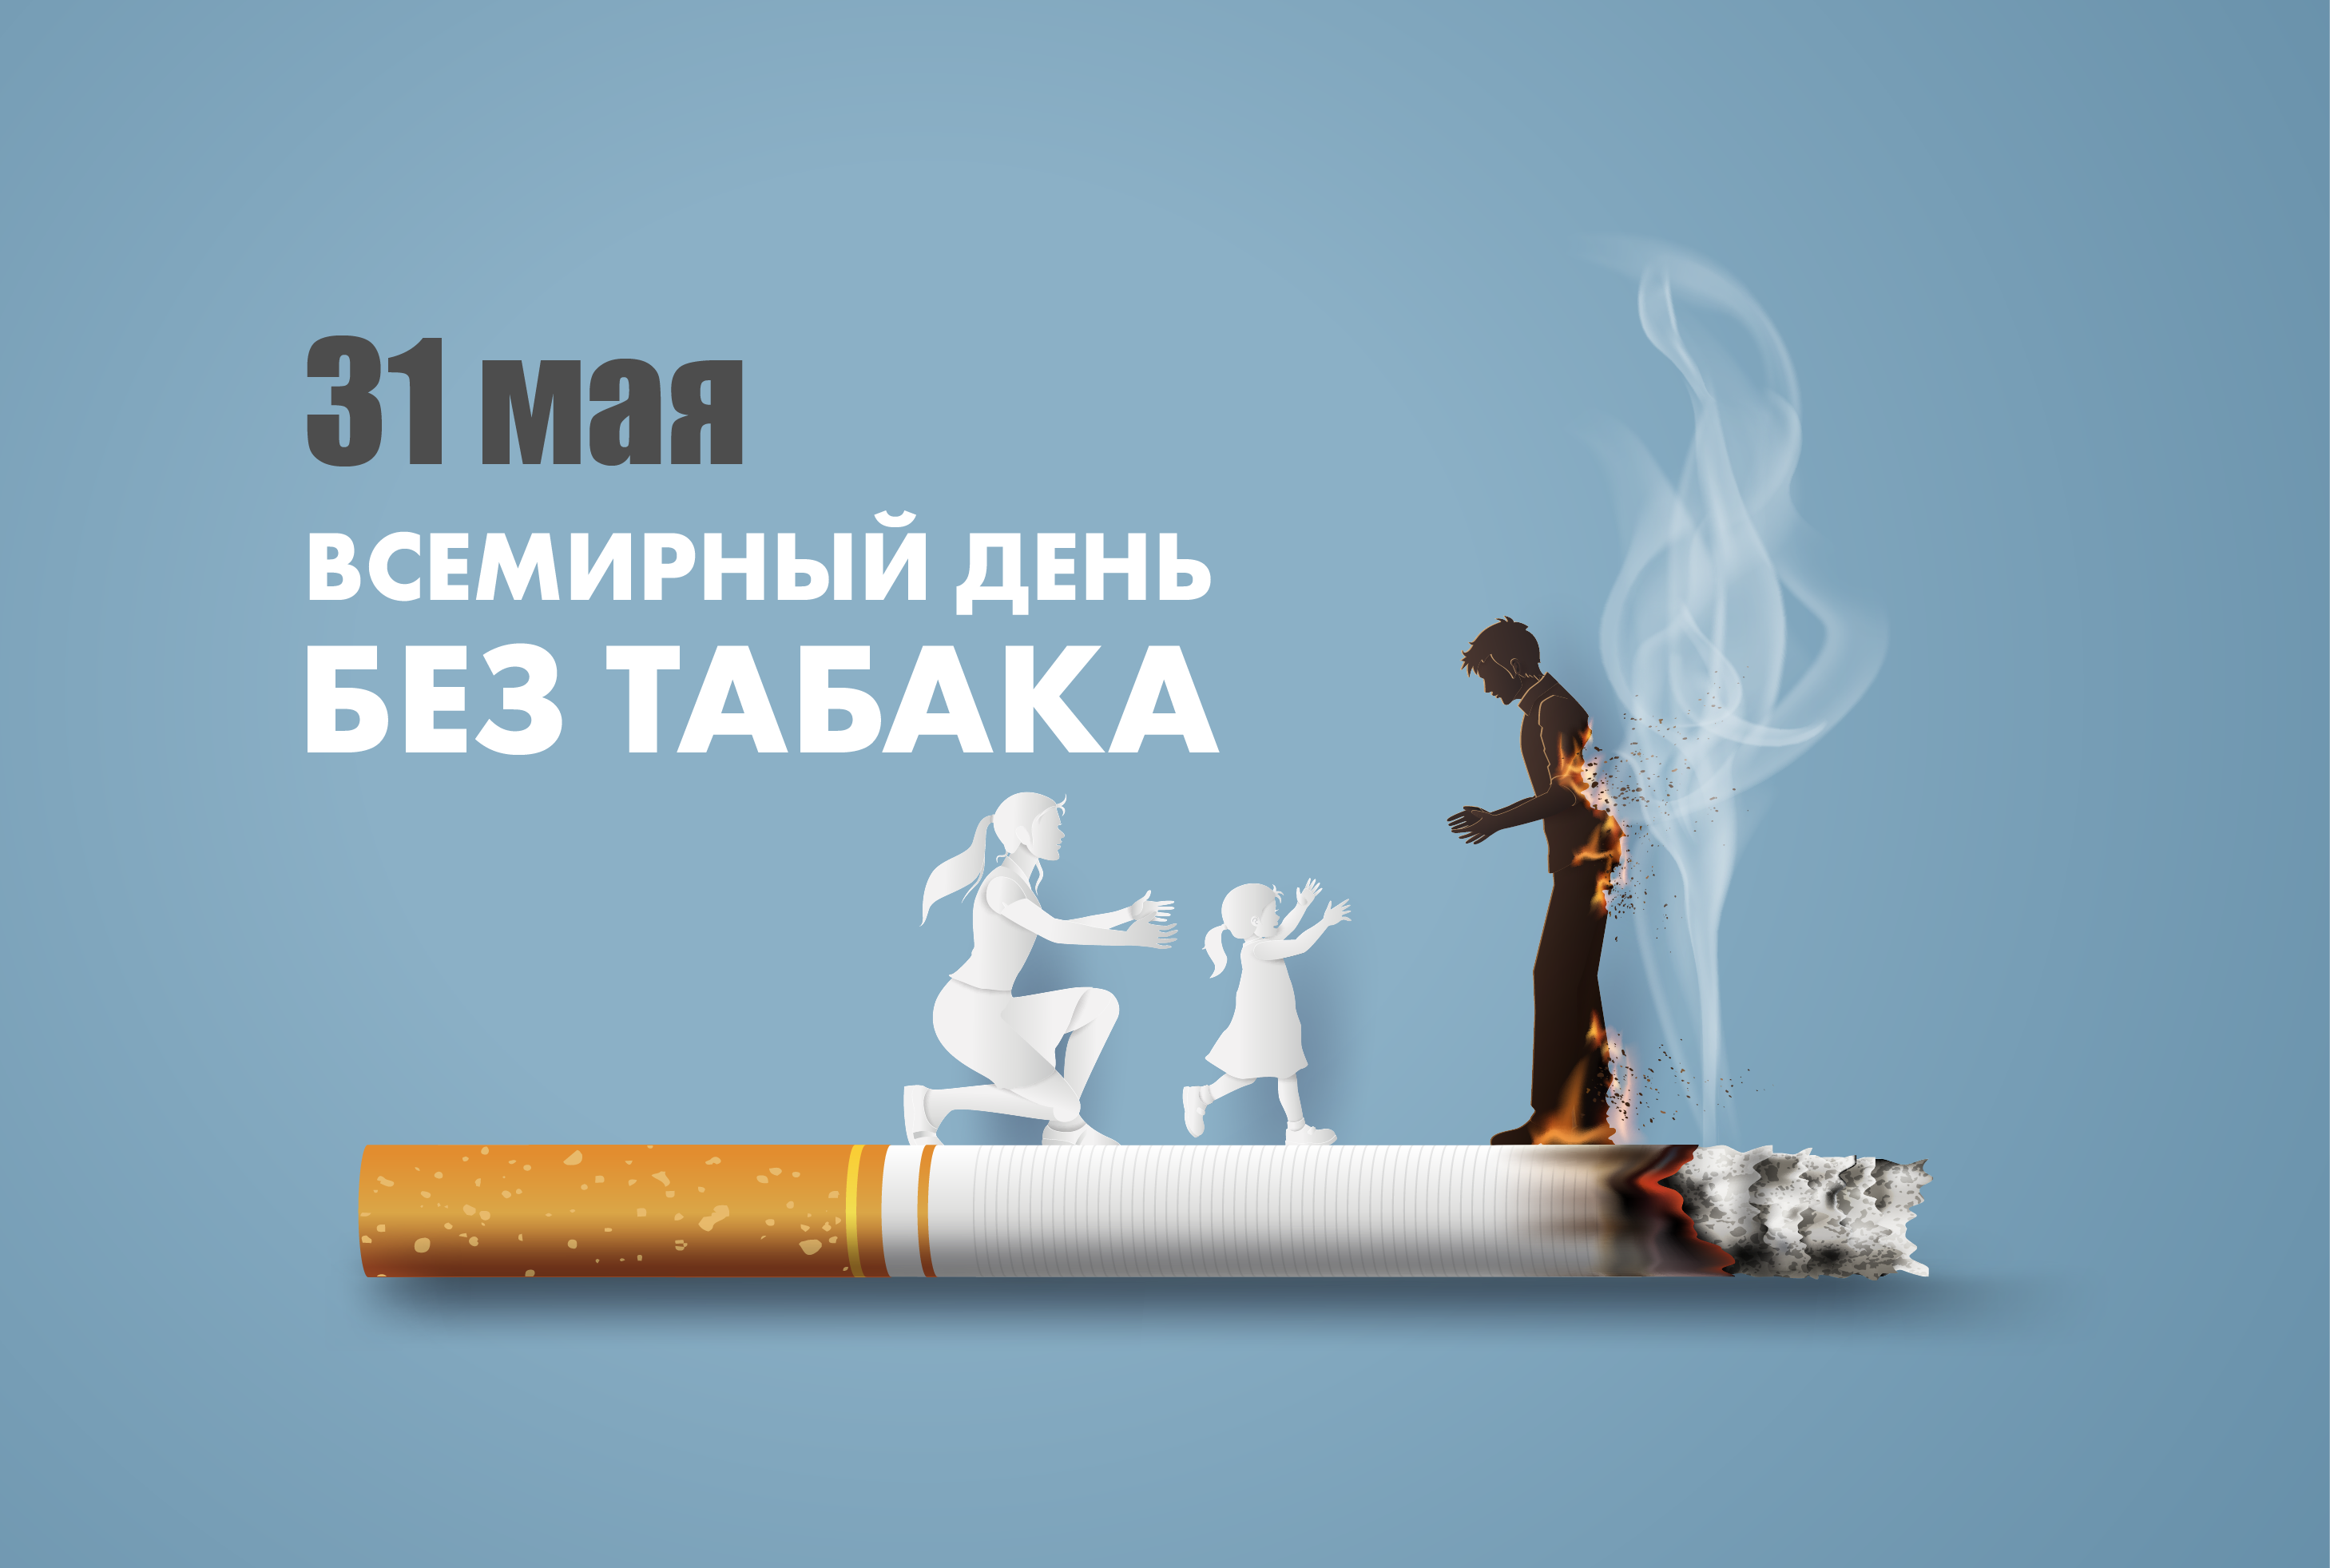 Изменения с 31 мая. 31 Мая табака Всемирный день. Всемирный день день без табака. 31 Всемирный день без табака. Акция Всемирный день без табака.